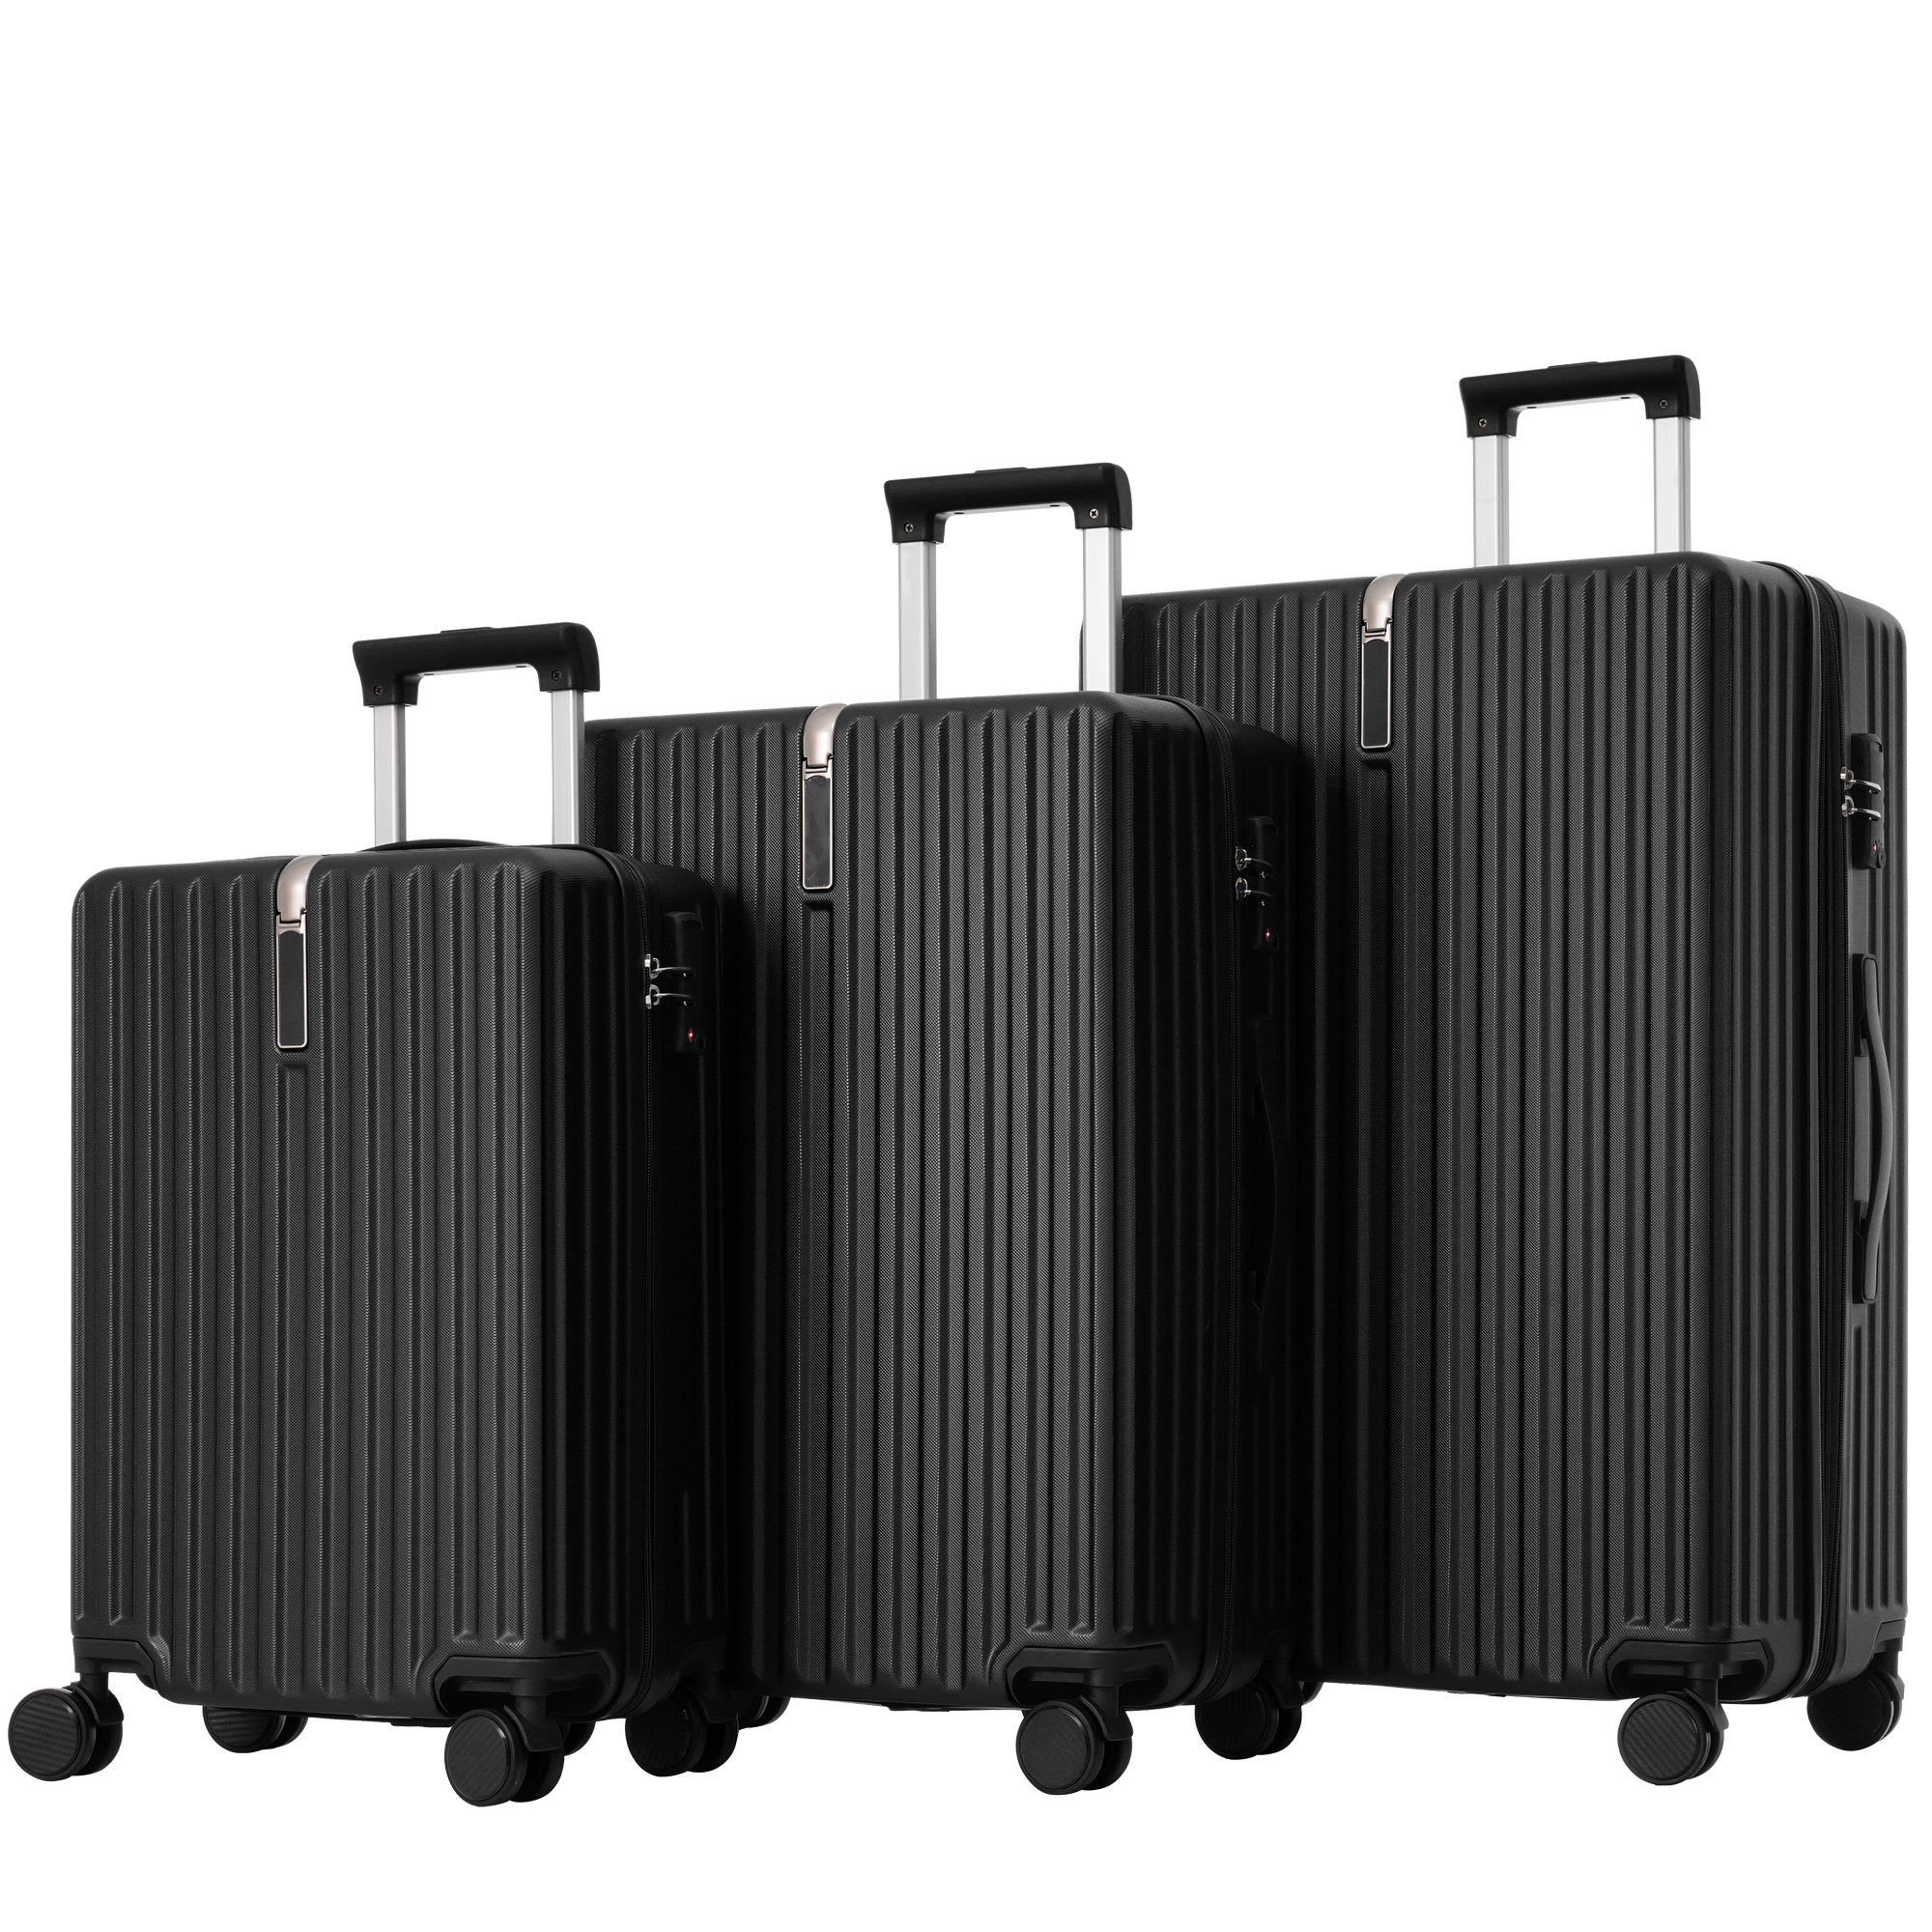 Ulife Trolleyset Kofferset Handgepäck Reisekoffer ABS-Material, TSA Zollschloss, 4 Rollen, (3 tlg) Schwarz